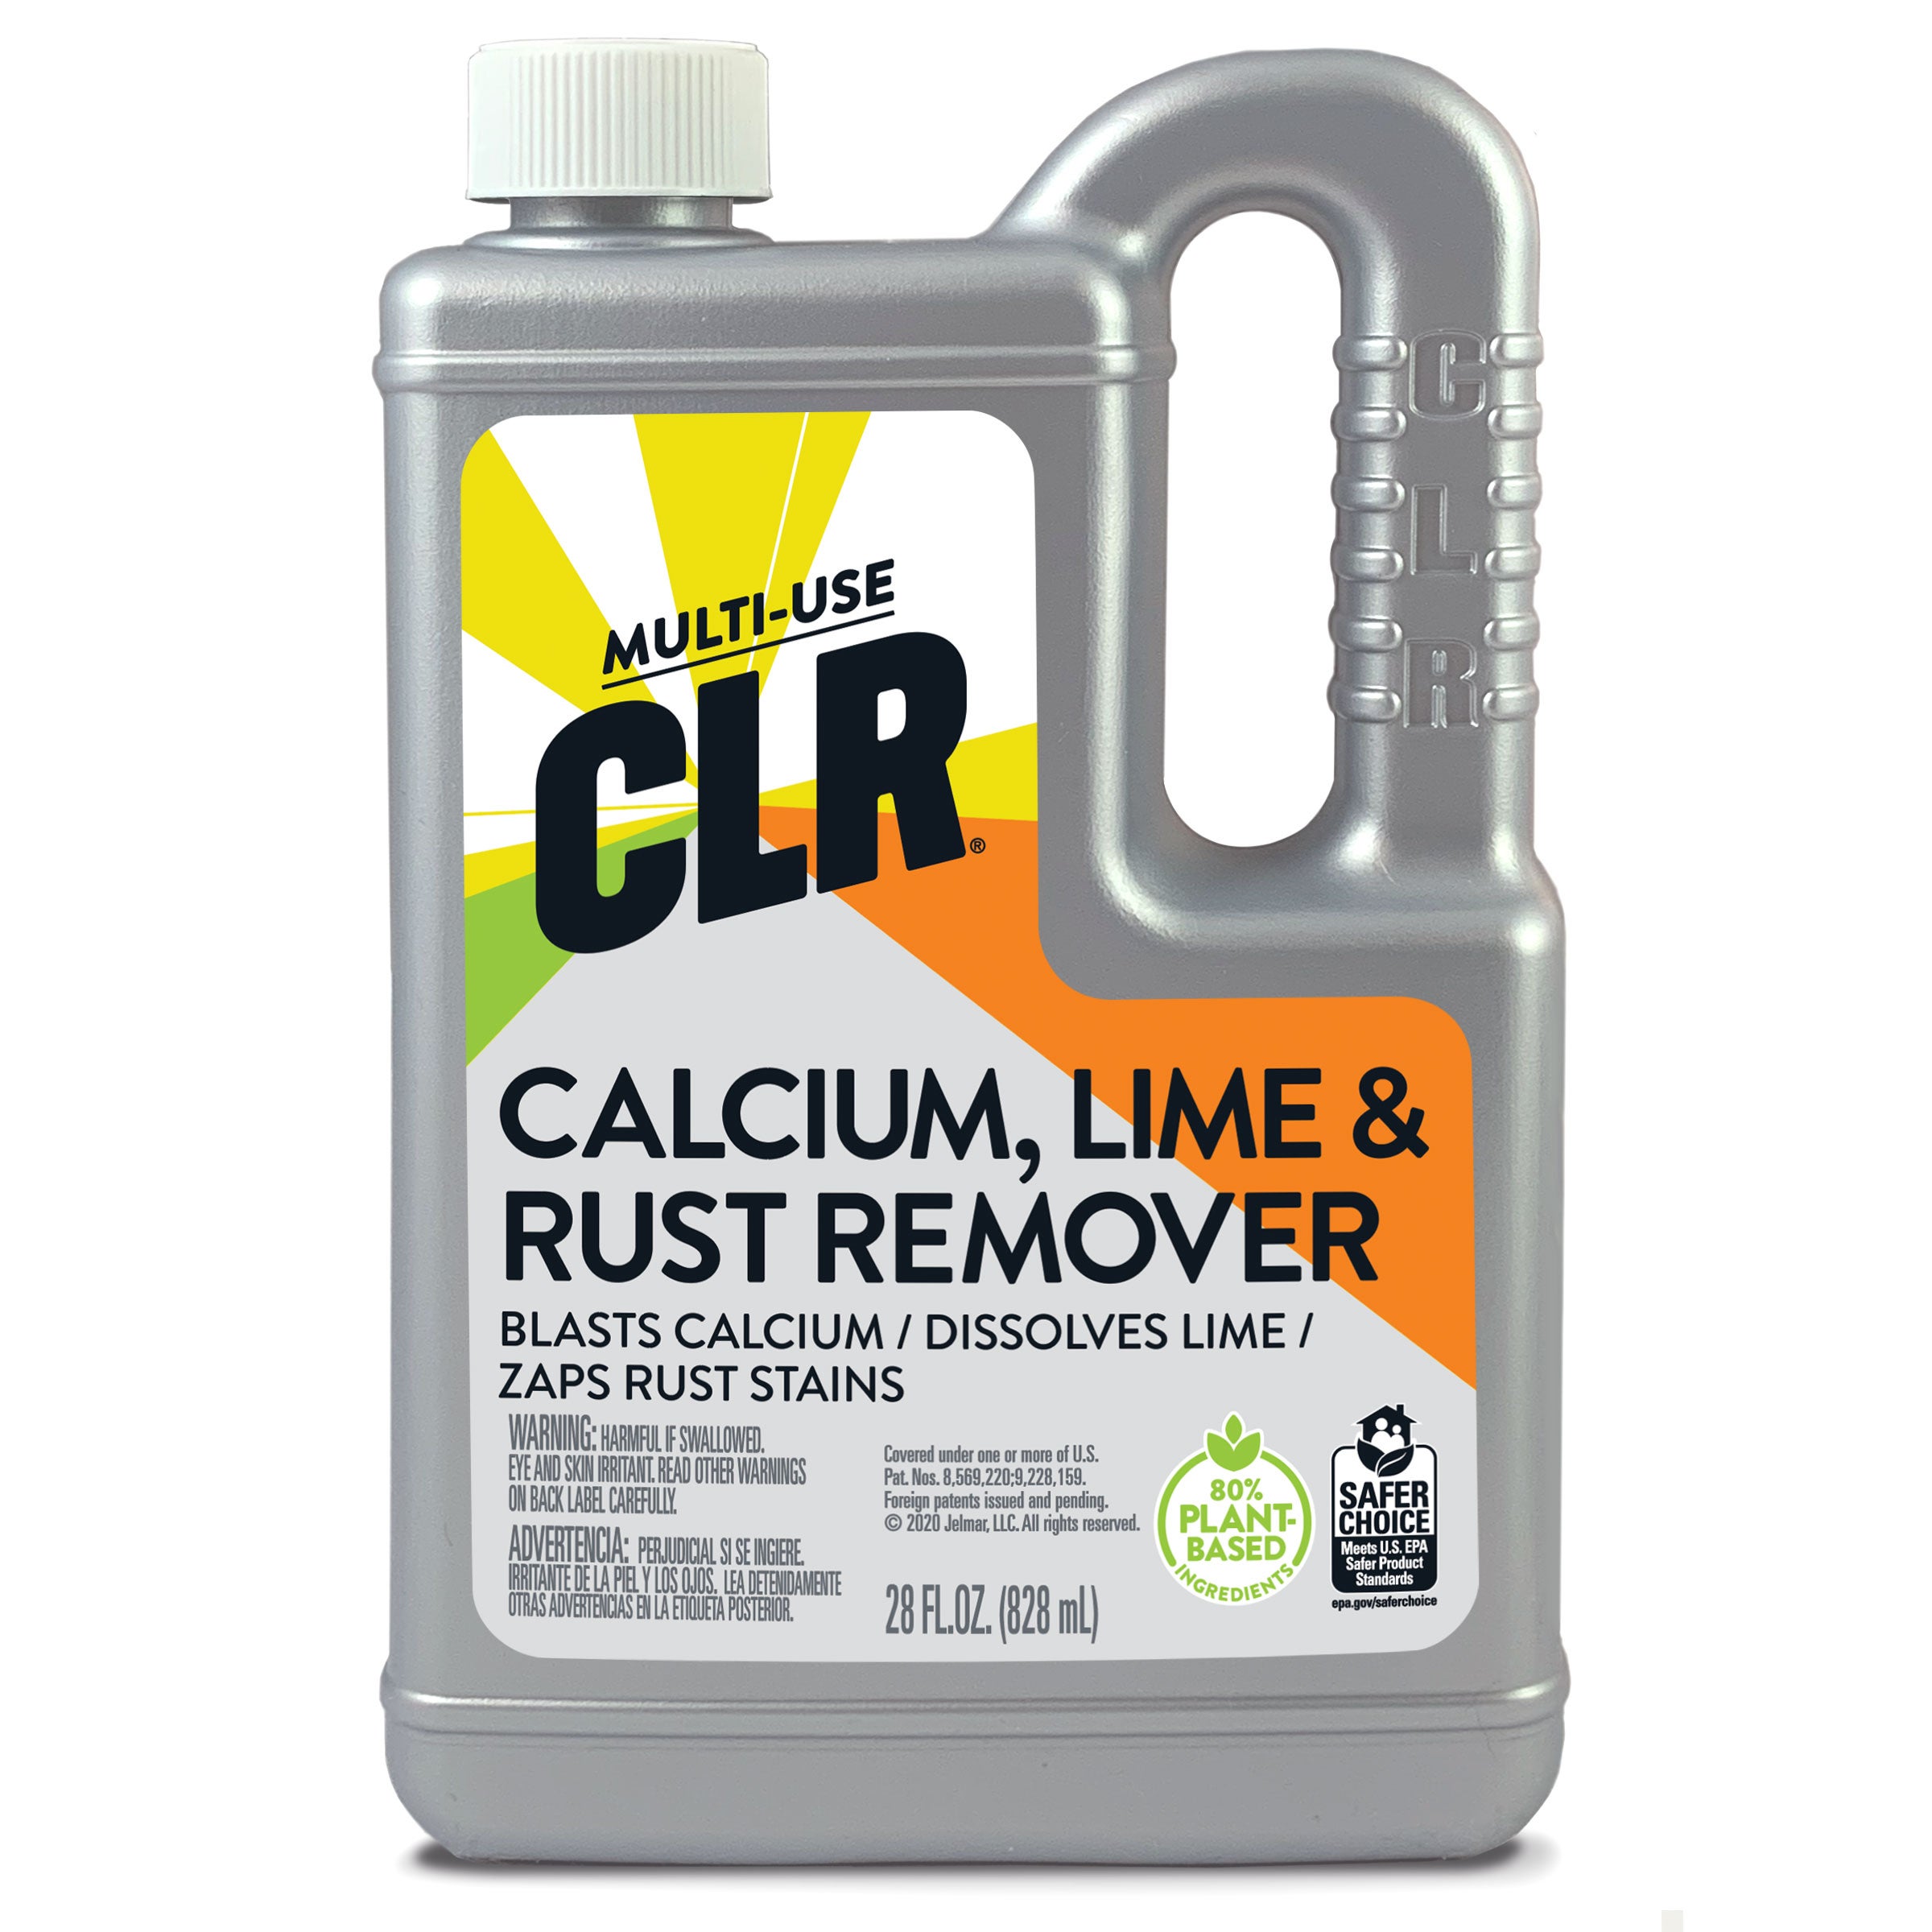 CLR Calcium Lime & Rust Remover